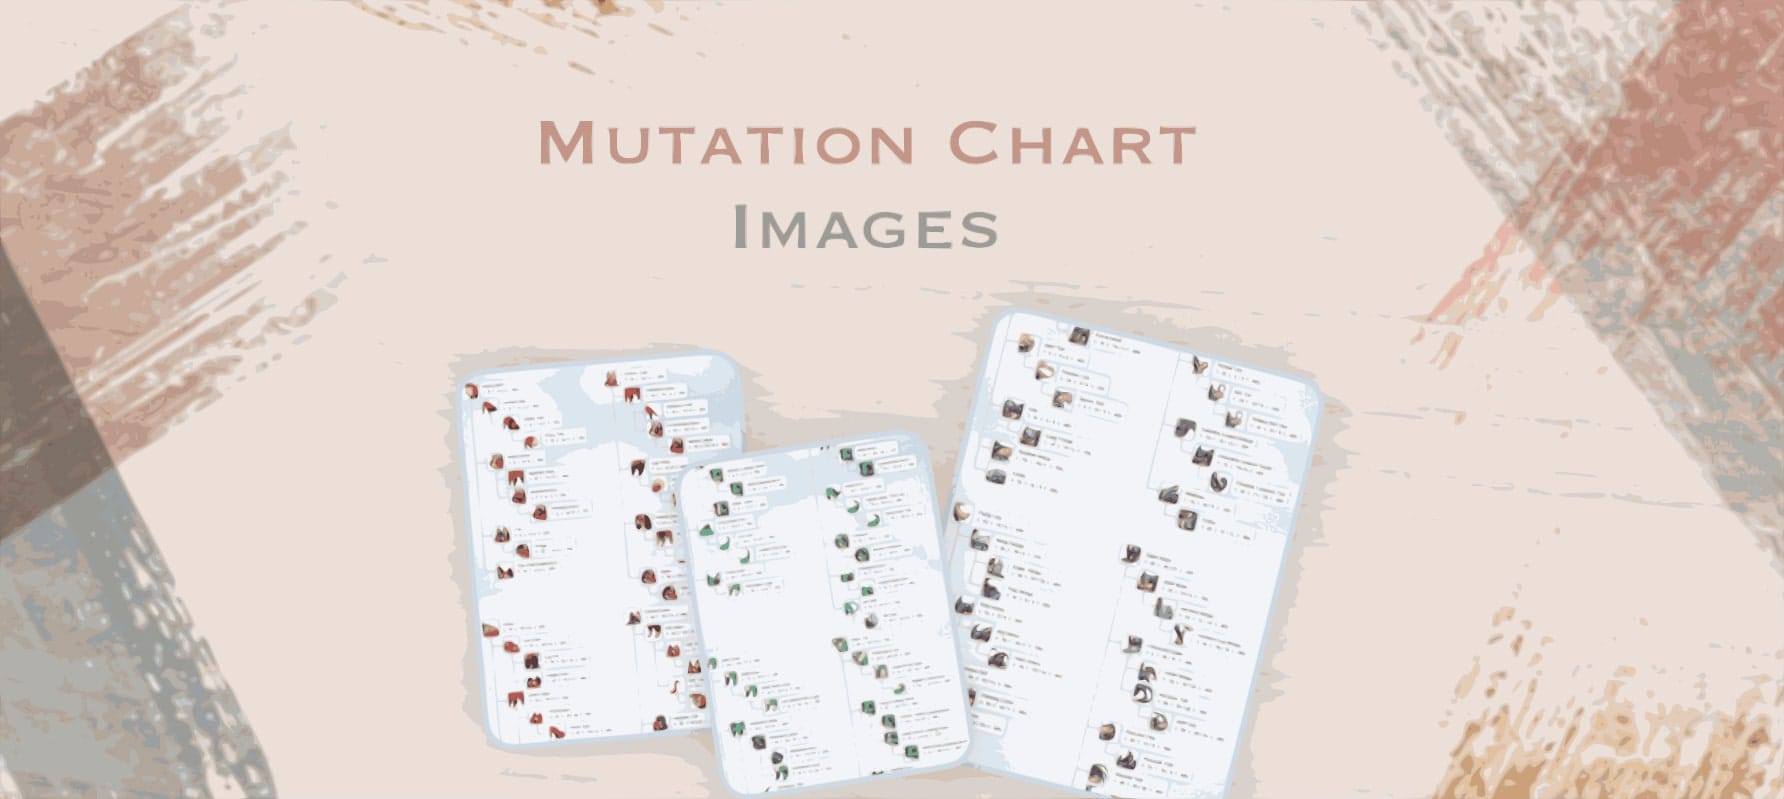 Mutation Chart Images image